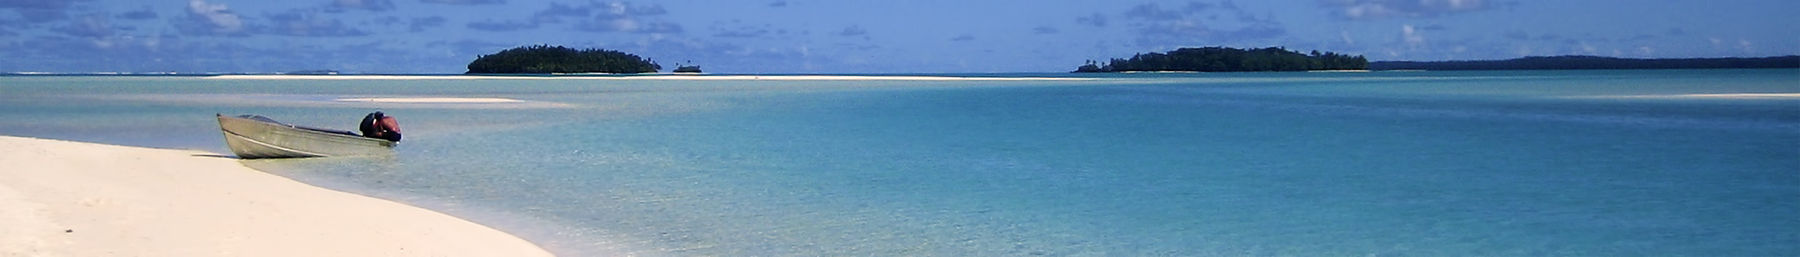 Praia das Ilhas Cook banner.jpg